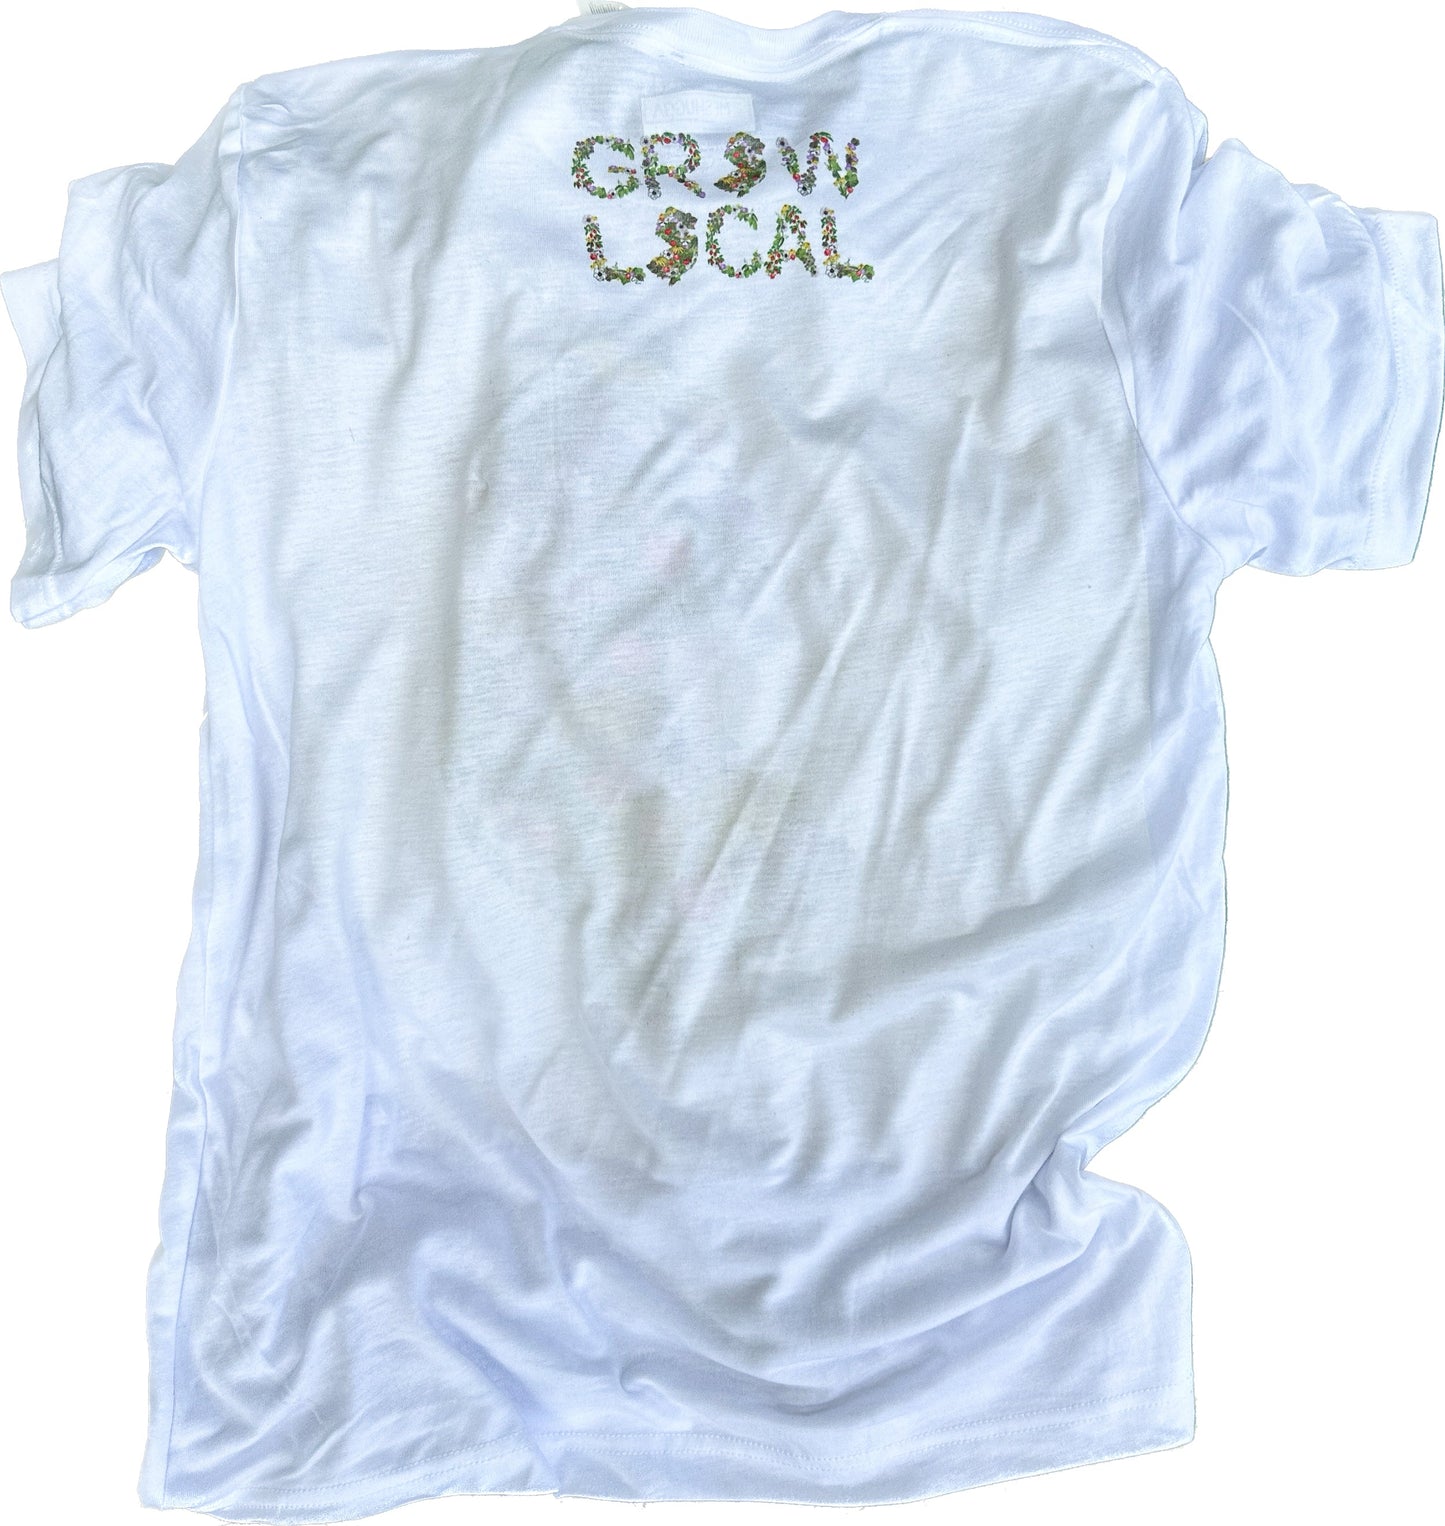 Garden State Grow Local Crop T-Shirt